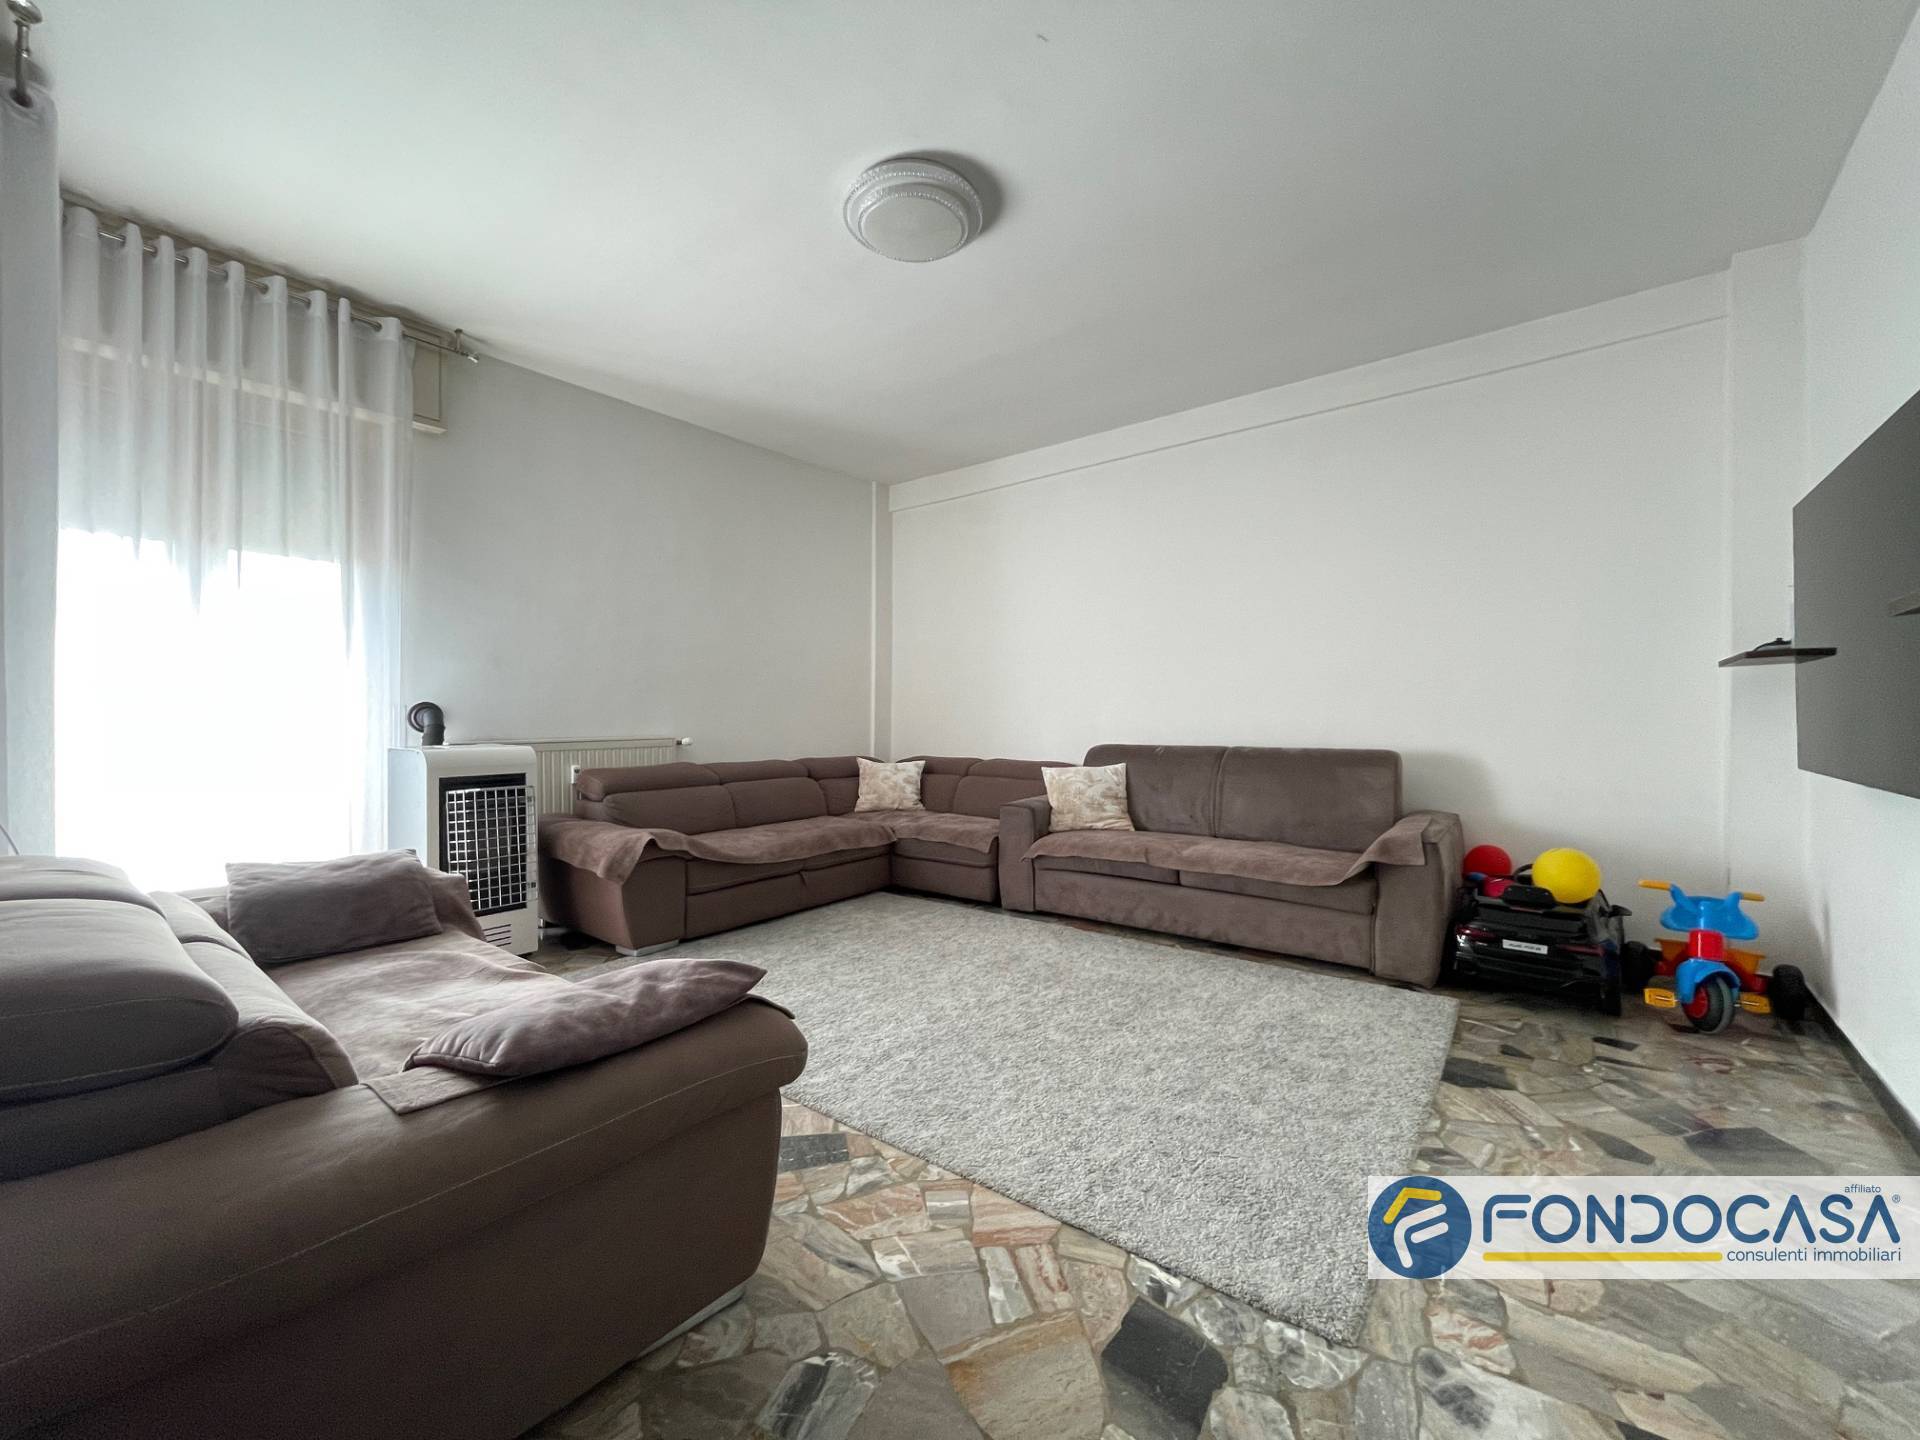 Appartamento in vendita a Grumello del Monte, 3 locali, prezzo € 100.000 | PortaleAgenzieImmobiliari.it